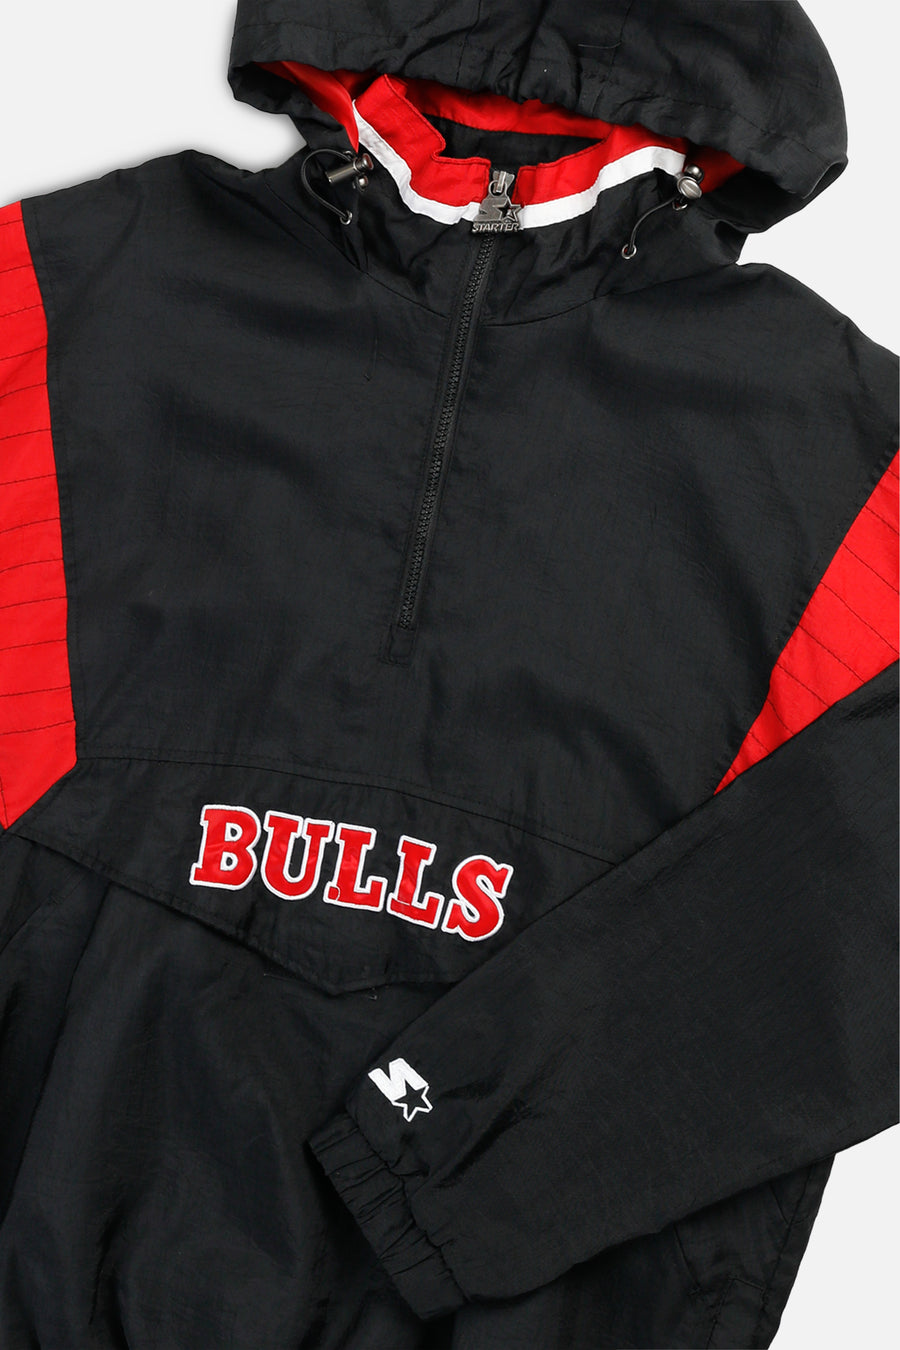 Vintage Chicago Bulls NBA Starter Jacket - L